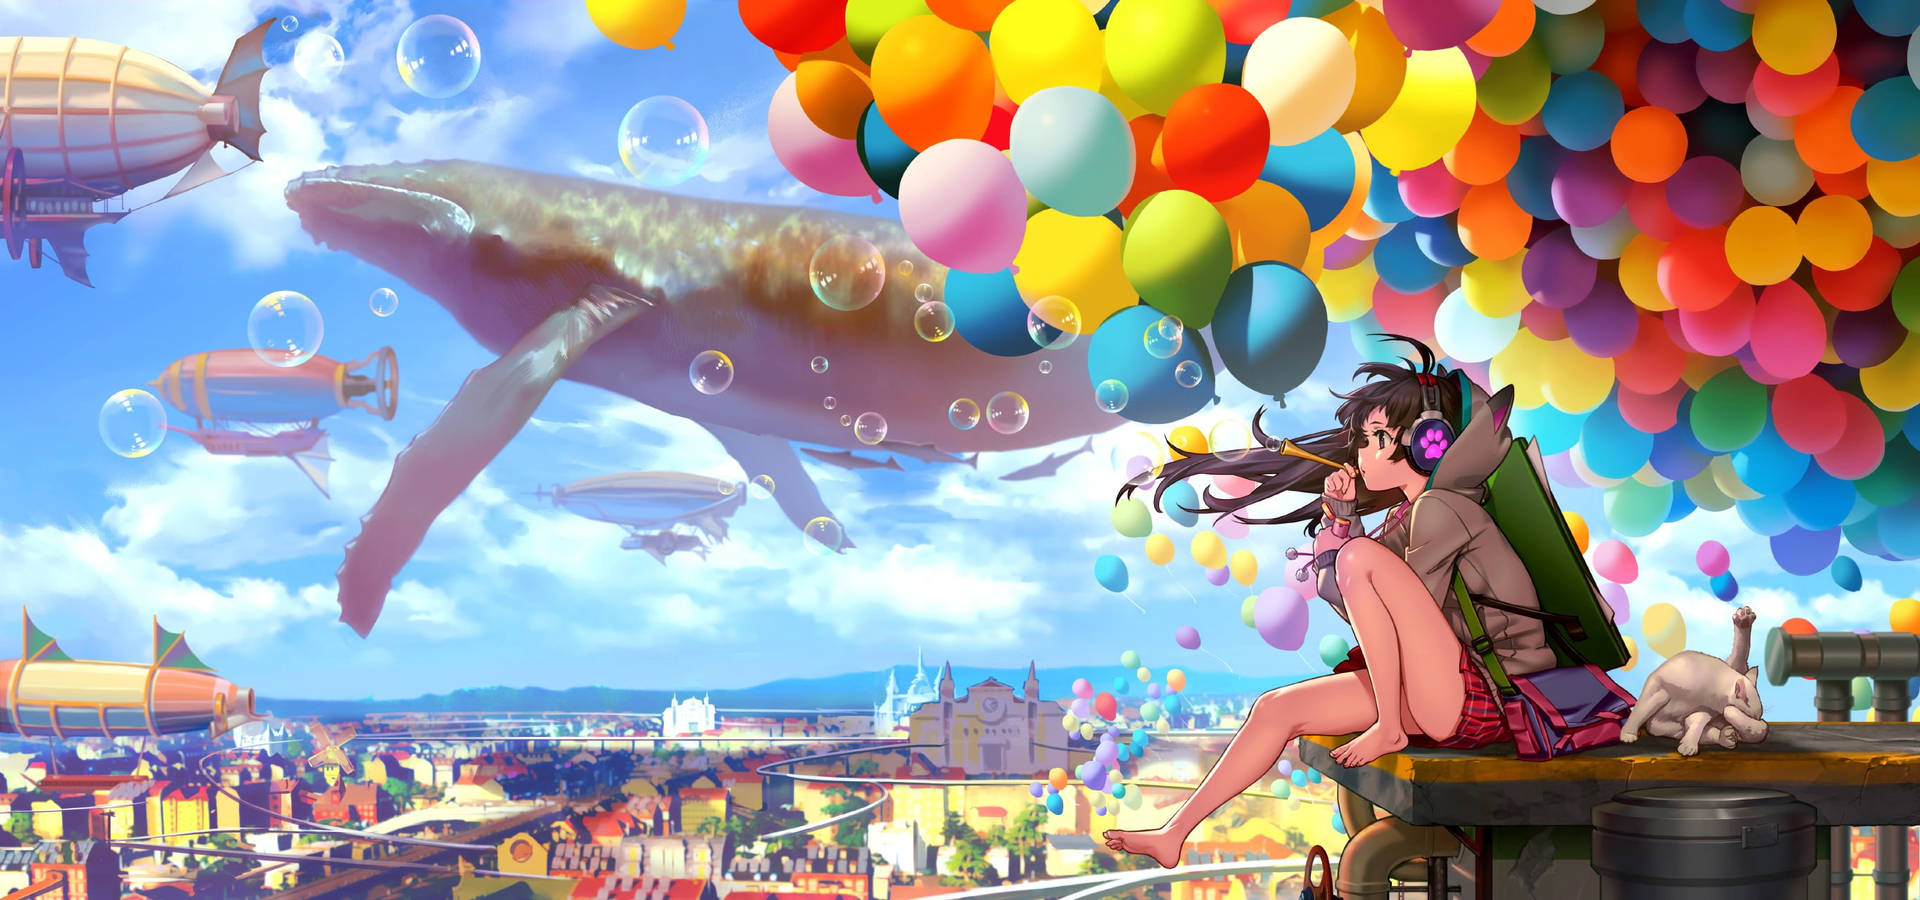 Animated Girl Fantasy World Background